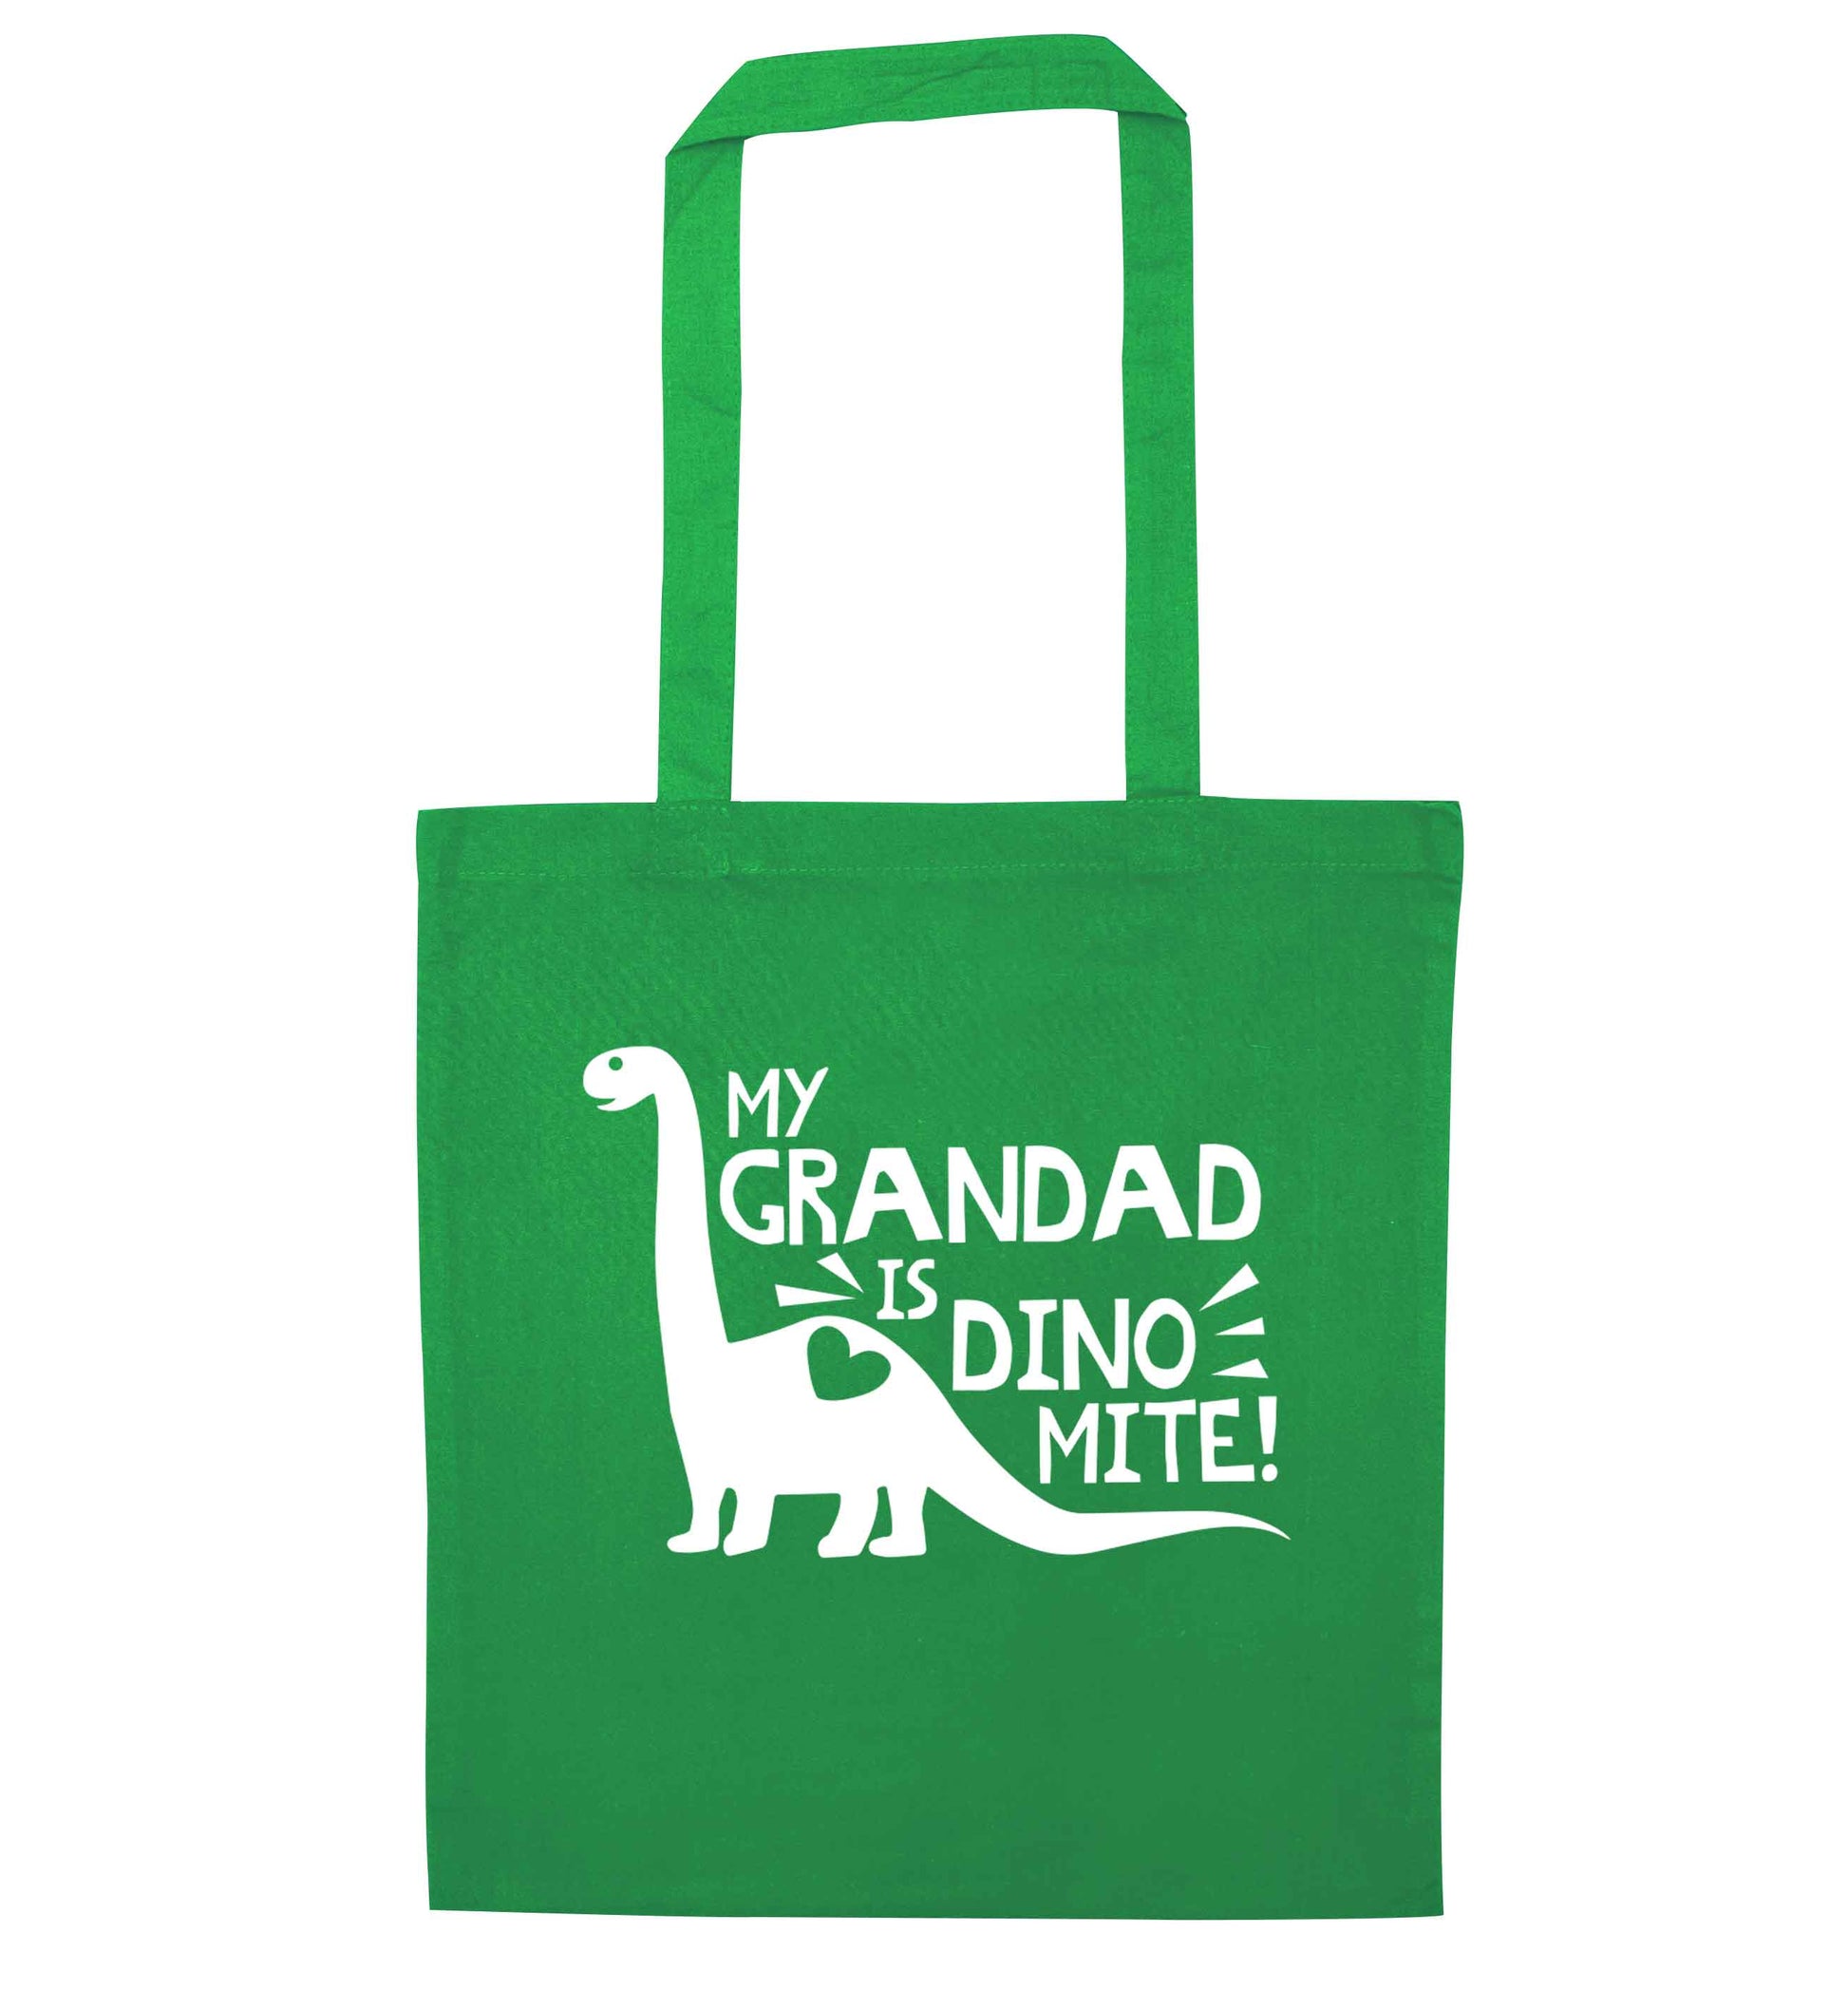 My grandad is dinomite! green tote bag